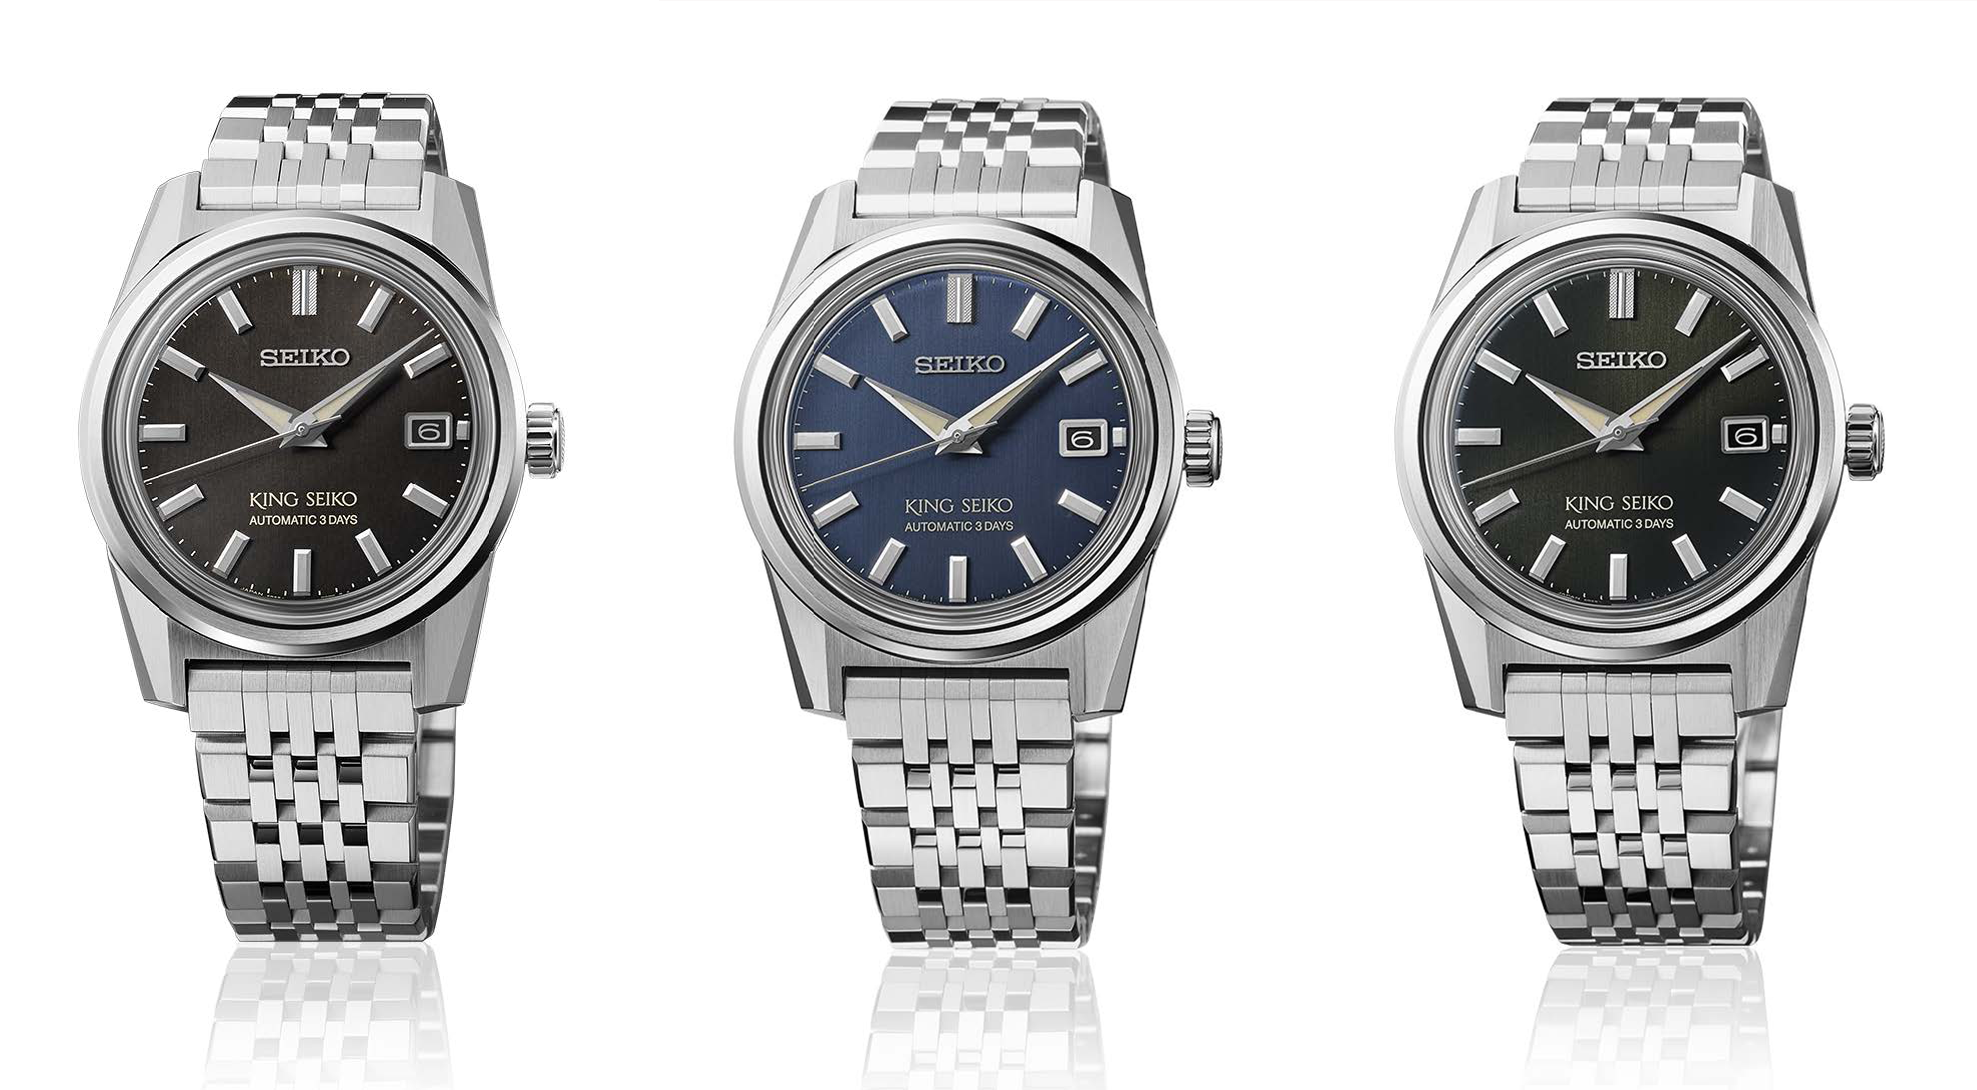 Novos relógios mecânicos King Seiko 6R55 com bracelete em aço fácil de mudar.